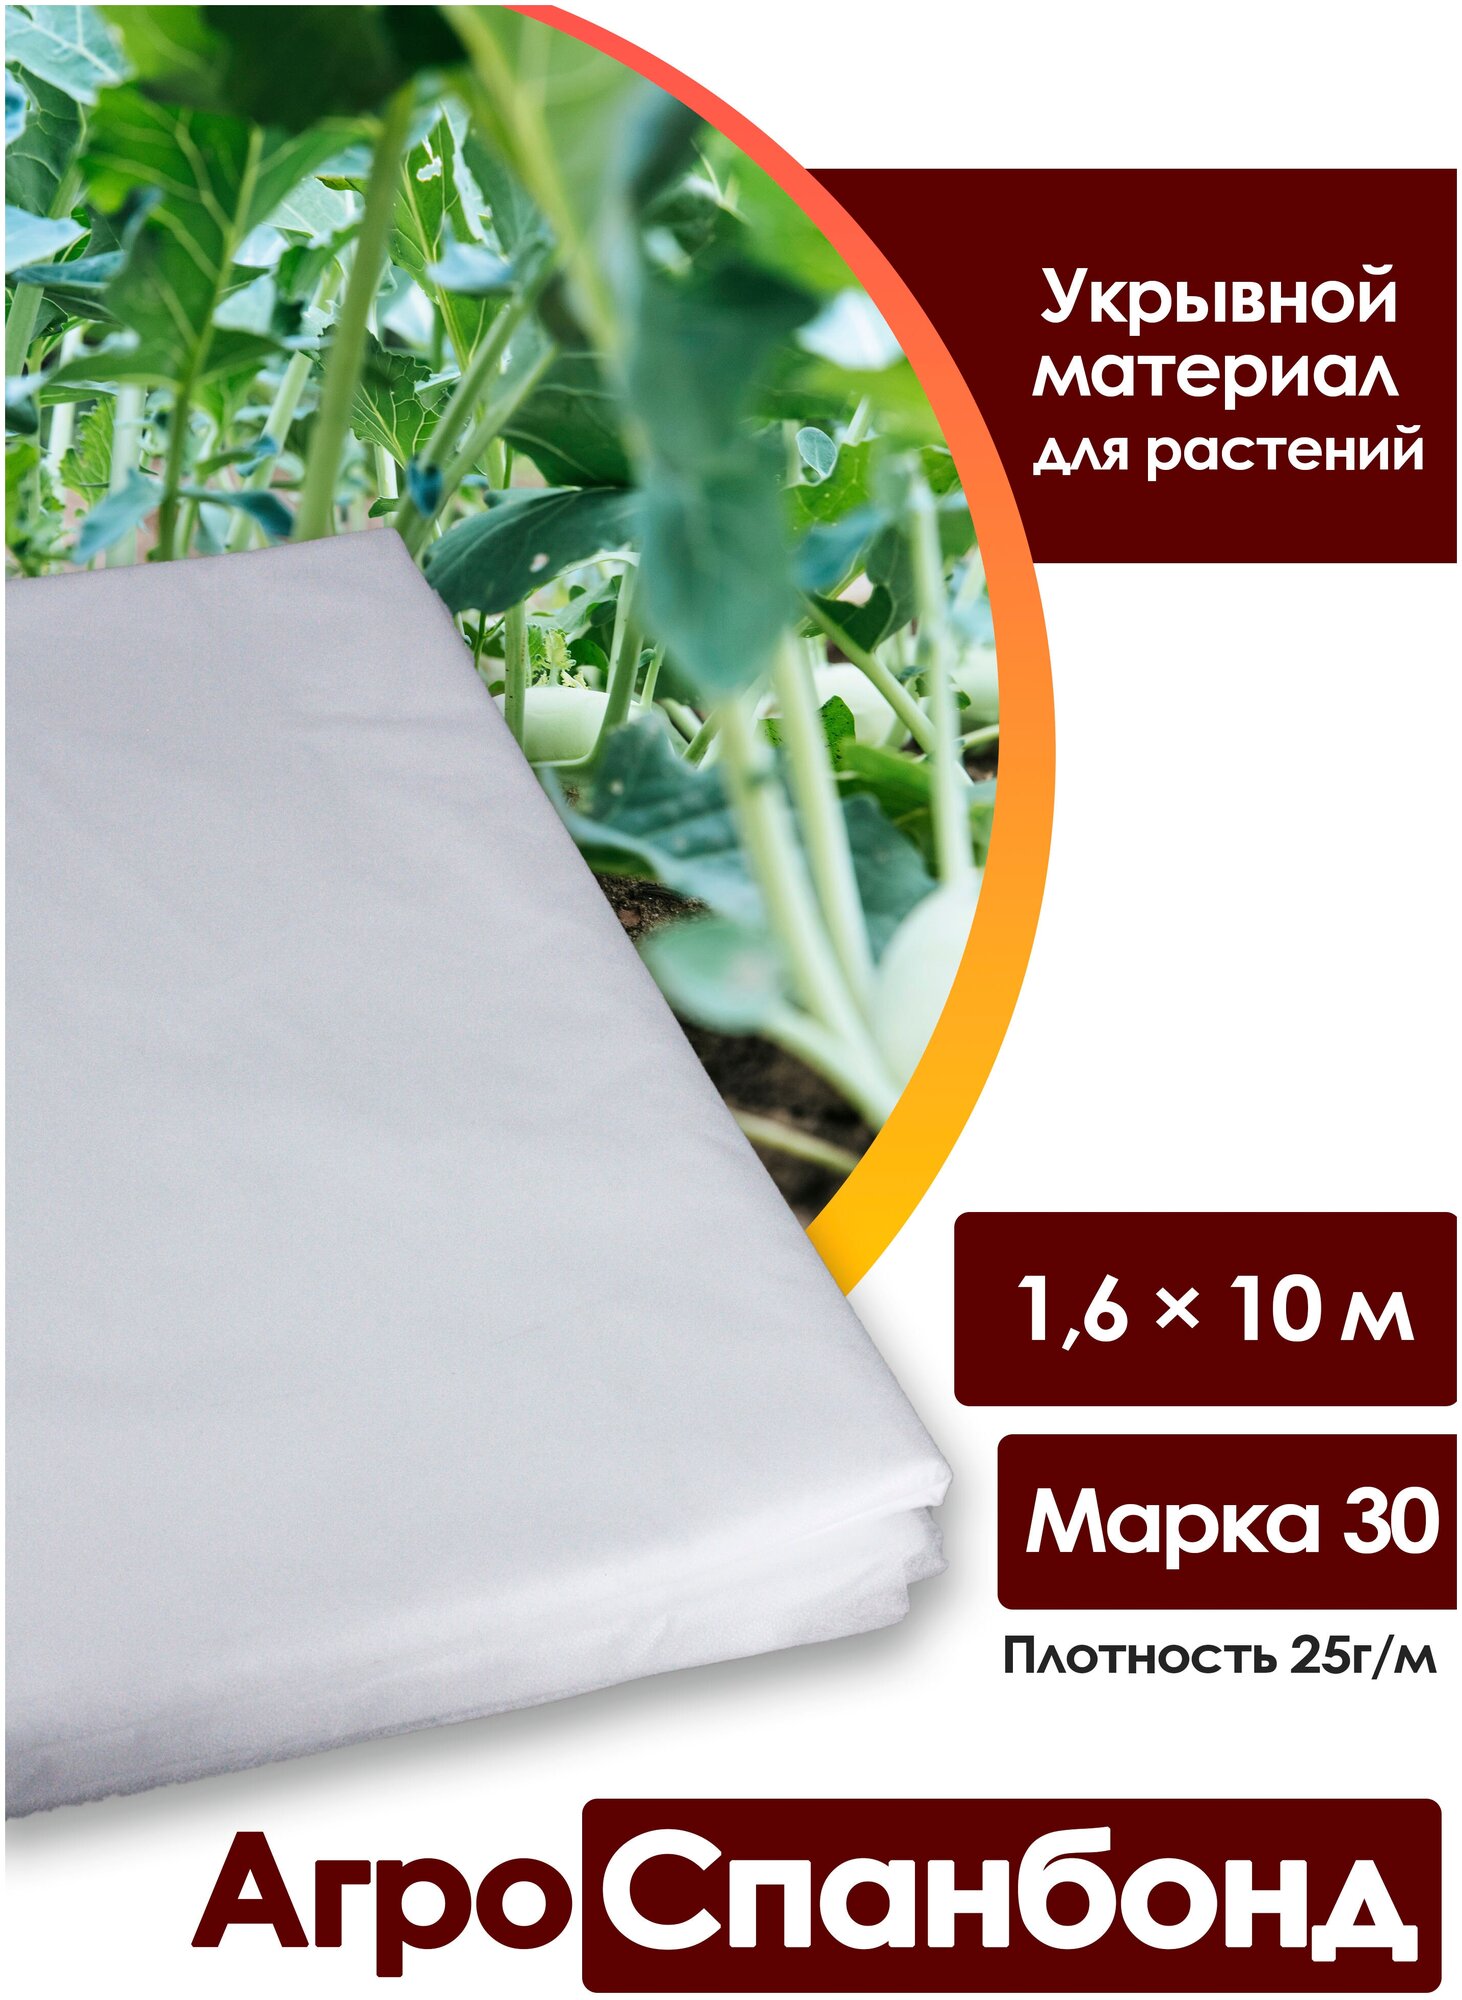 Body Pillow / Спанбонд укрывной 1,6х10 м, плотность 25 г/м2, марка "30"/ Агротекстиль для теплиц, растений / Нетканый укрывной материал